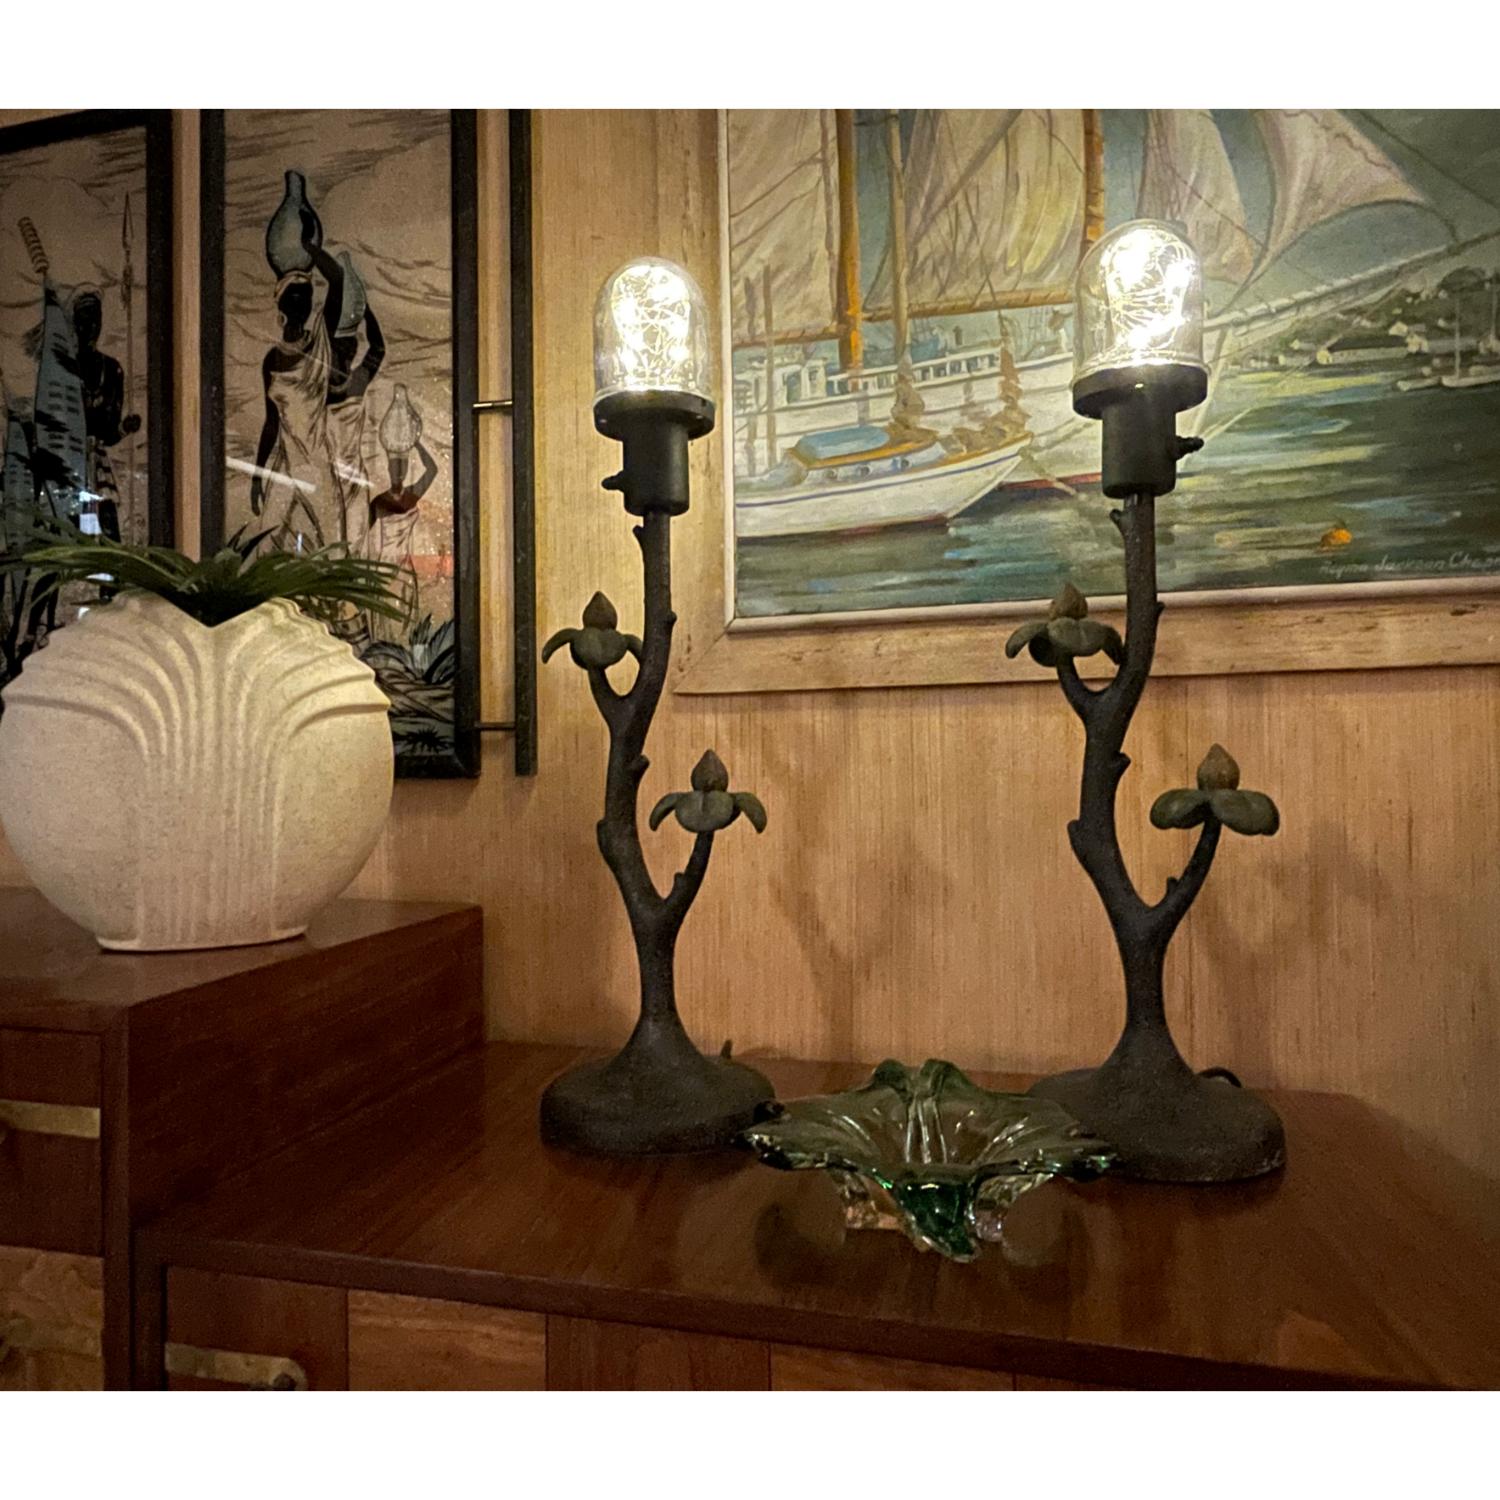 Cleveres und stilvolles Paar Tischlampen für drinnen und draußen. Die Lampen aus dem frühen 21. Jahrhundert sind aus Harz gefertigt, was sie wetterbeständig macht. Die Lampen sind mit geerdeten, strapazierfähigen Kabeln, gummigekapselten Schaltern